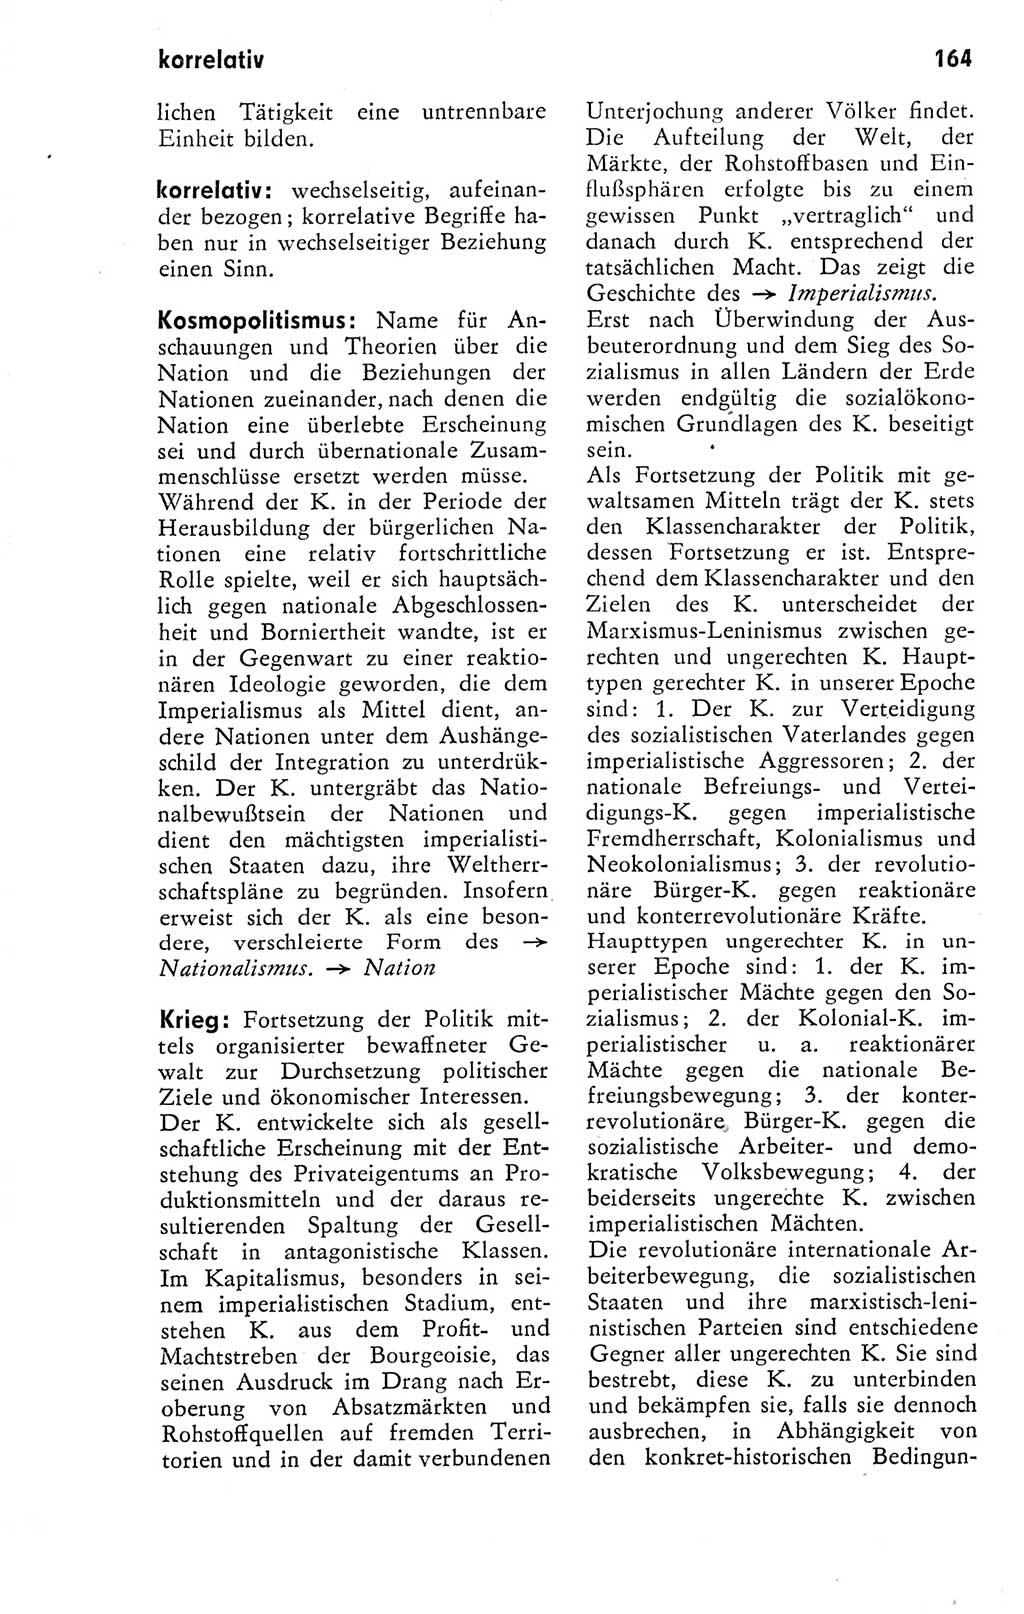 Kleines Wörterbuch der marxistisch-leninistischen Philosophie [Deutsche Demokratische Republik (DDR)] 1974, Seite 164 (Kl. Wb. ML Phil. DDR 1974, S. 164)